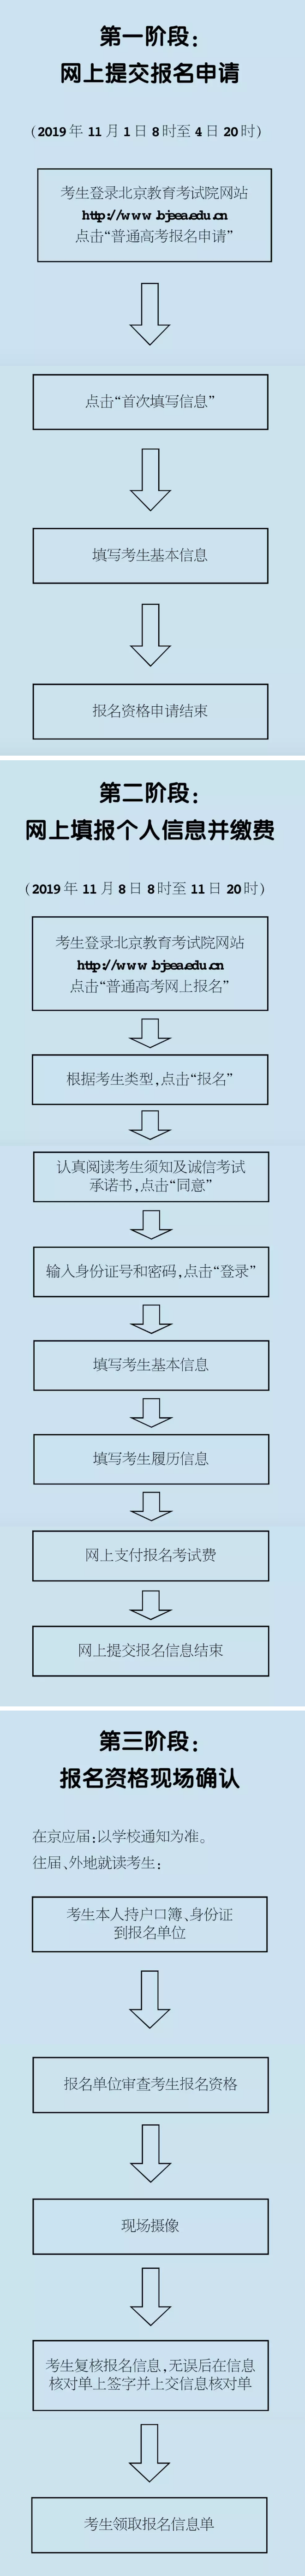 2020年北京高考报名流程